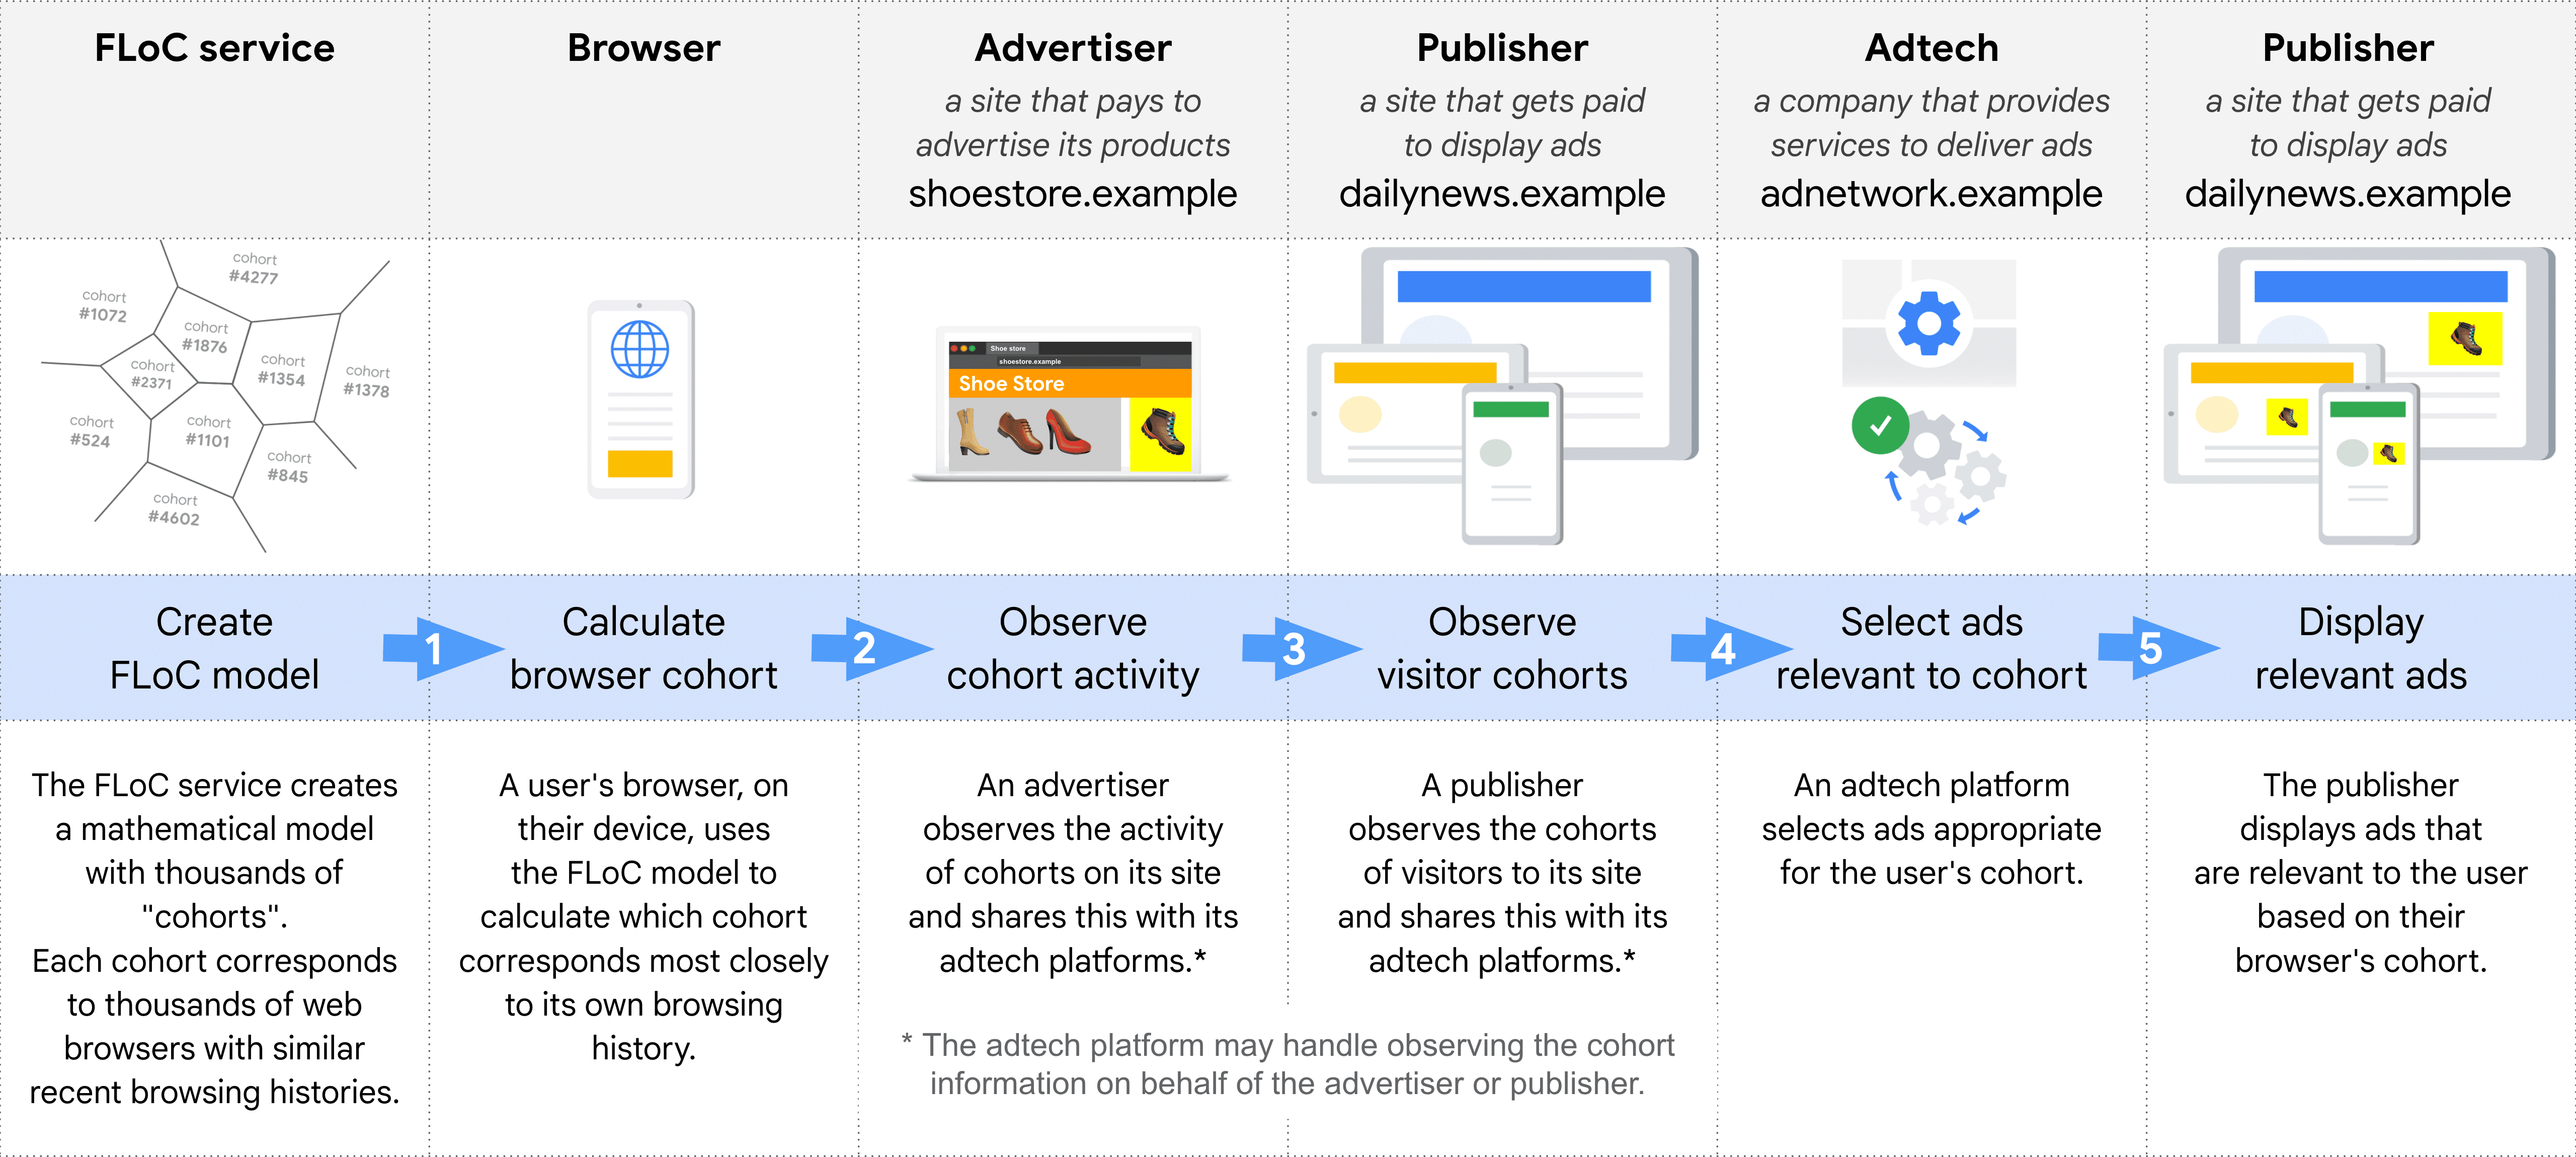 Diagramm, das Schritt für Schritt die verschiedenen Rollen bei der Auswahl und Auslieferung einer Anzeige mit FLoC zeigt: FLoC-Dienst, Browser, Werbetreibende, Publisher (zur Beobachtung von Kohorten), AdTech, Publisher (zum Schalten von Anzeigen)